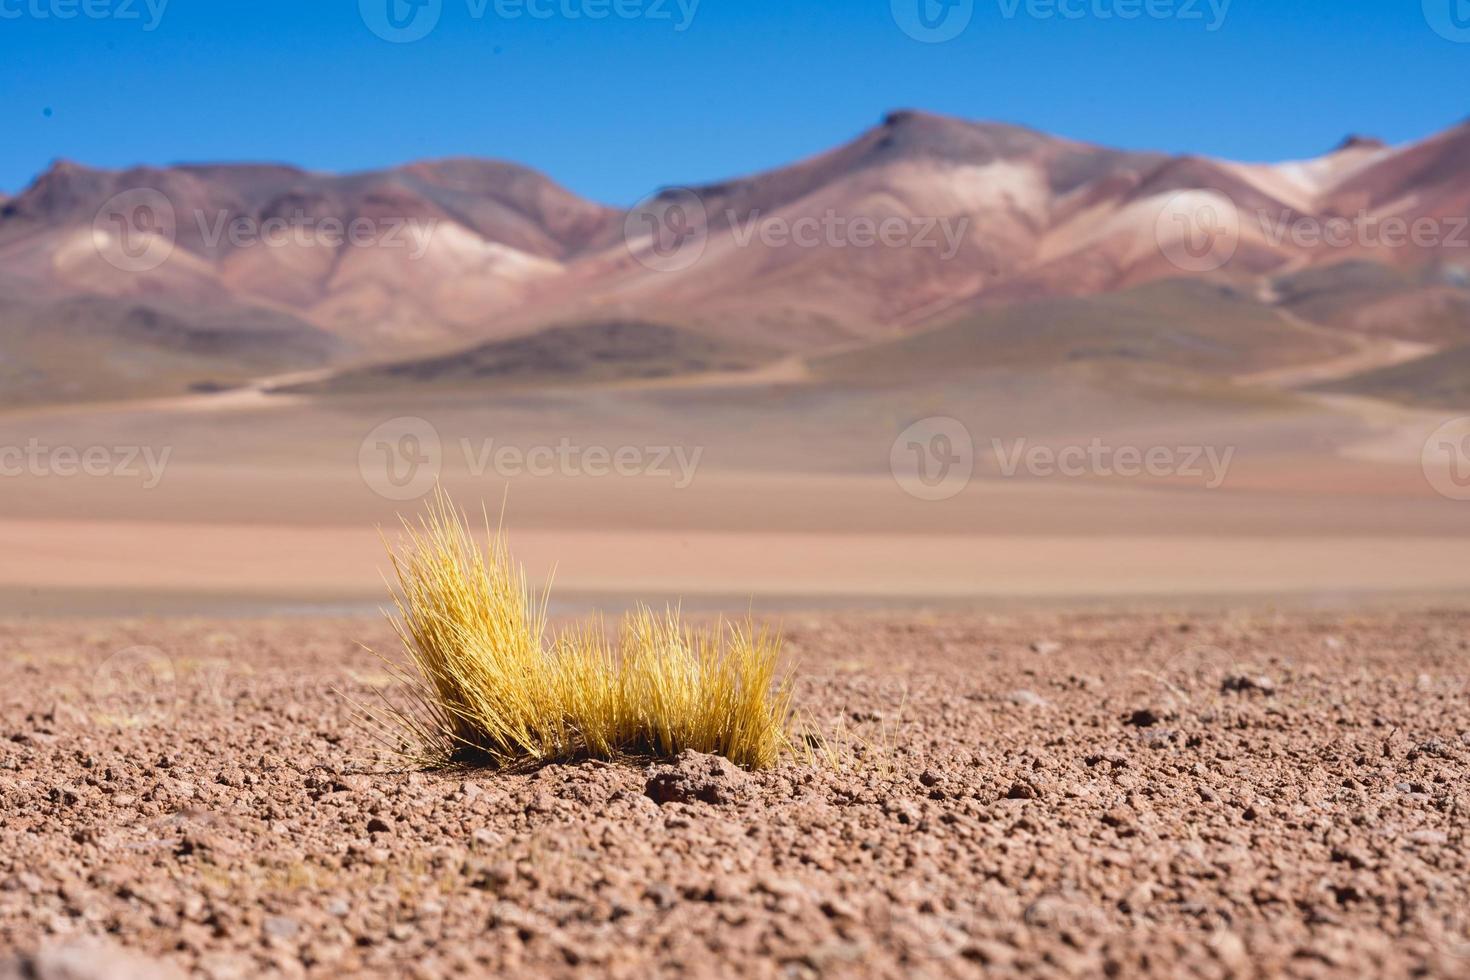 paisaje desértico de bolivia con rocas y tierra roja foto